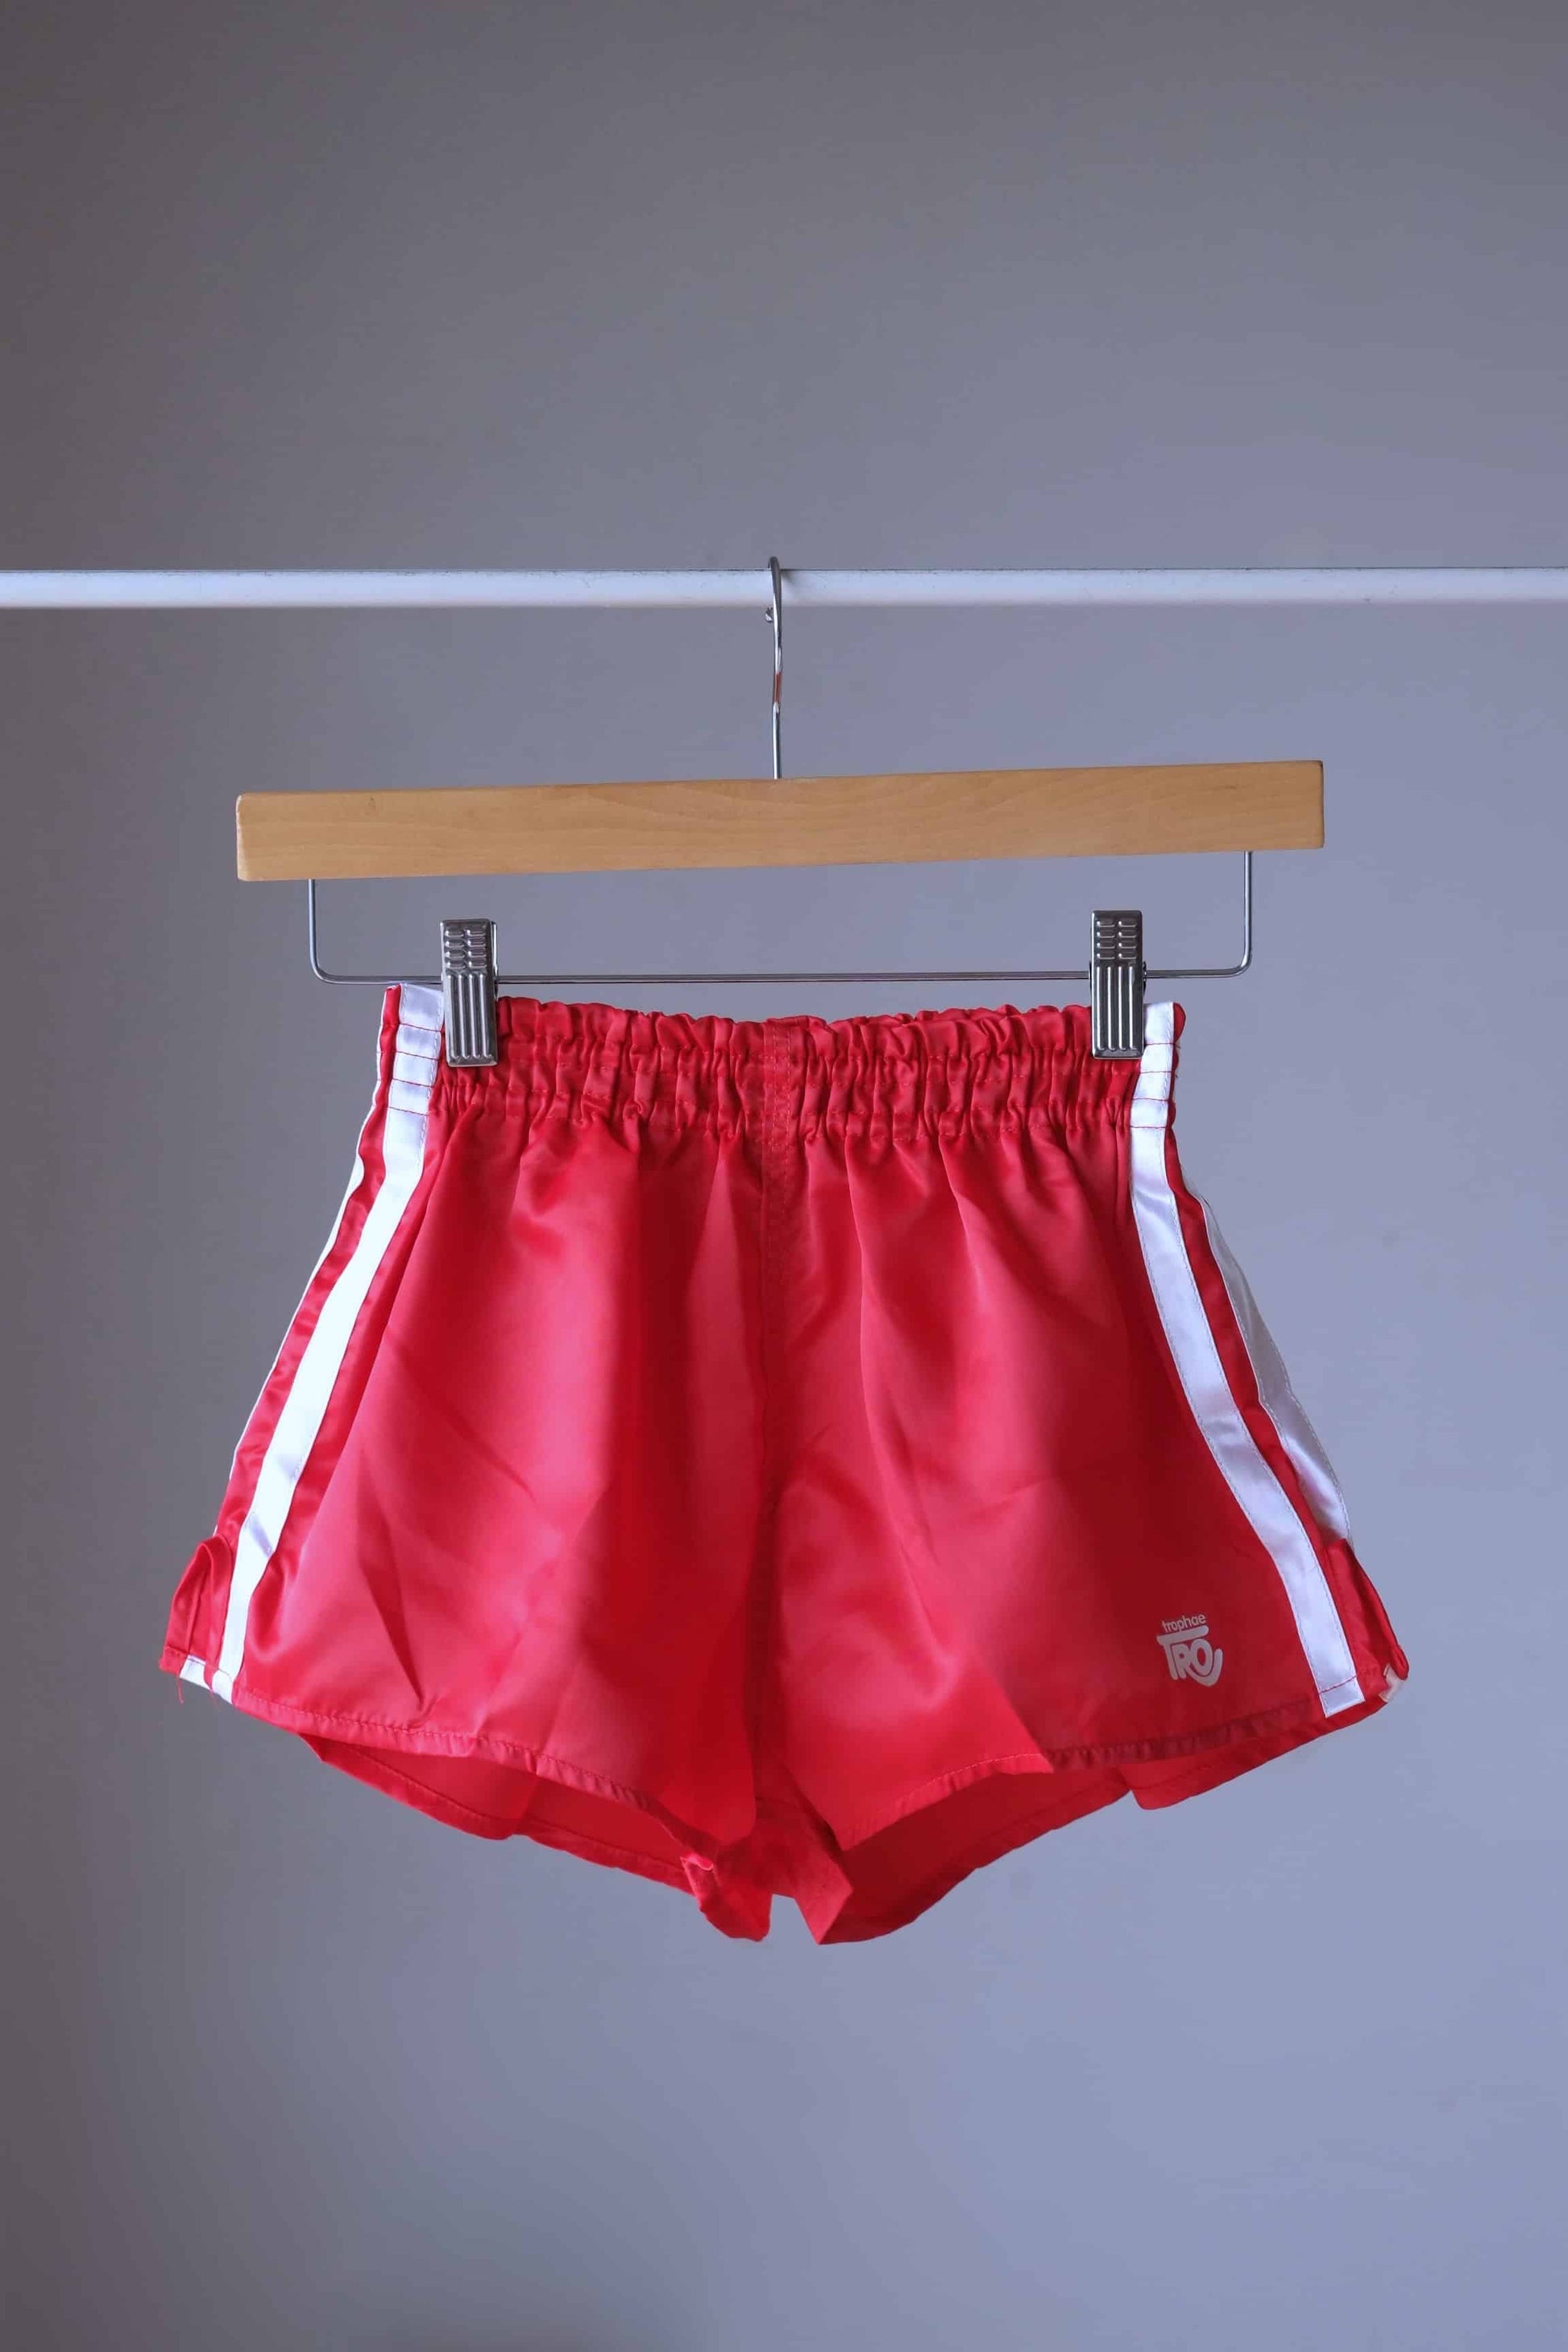 Vintage 80's Satin Jogging Shorts red